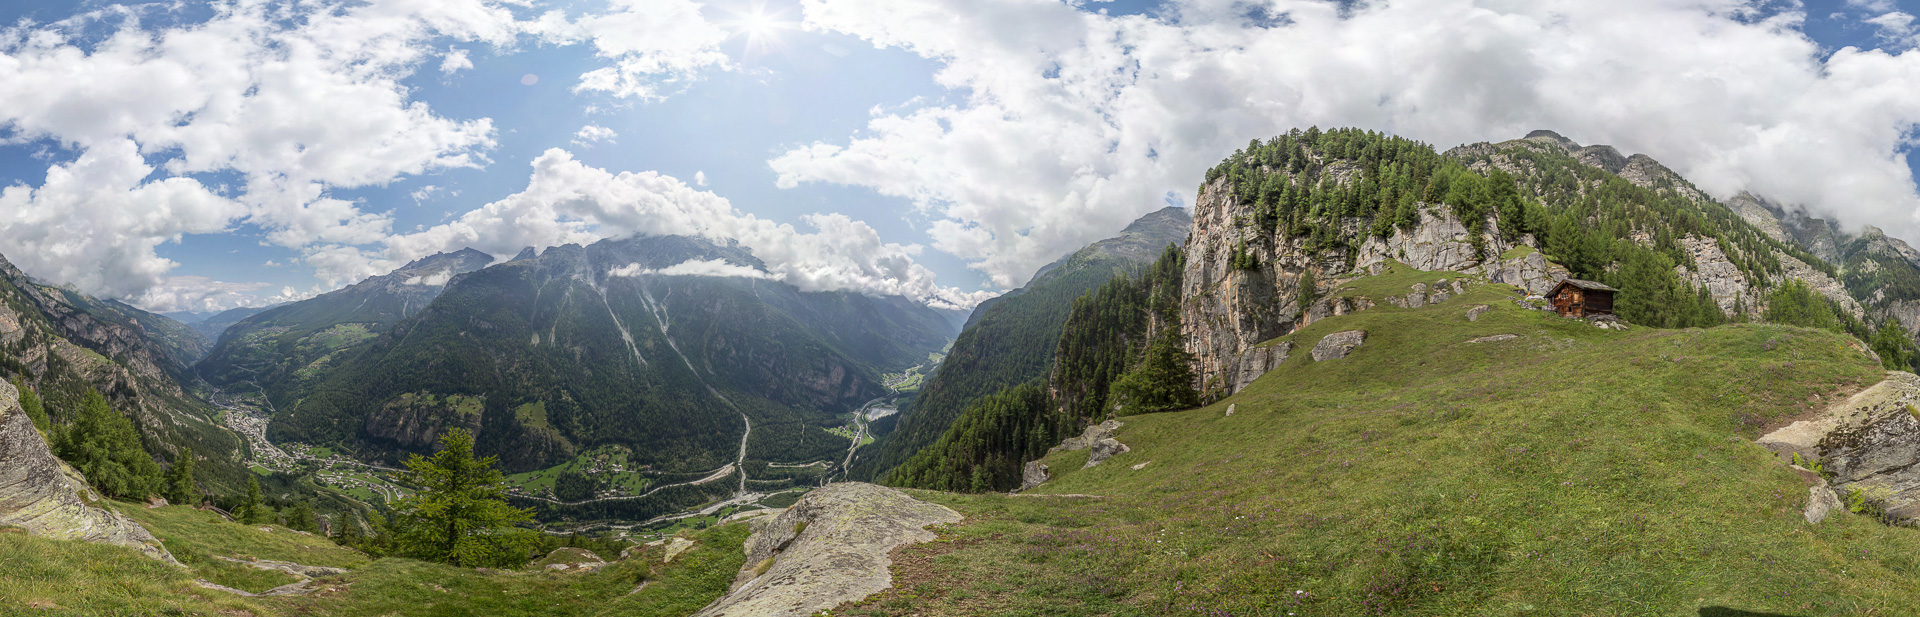 Schönes Panorama mit gewaltigem Tiefblick ins Mattertal an der Gemshütte.